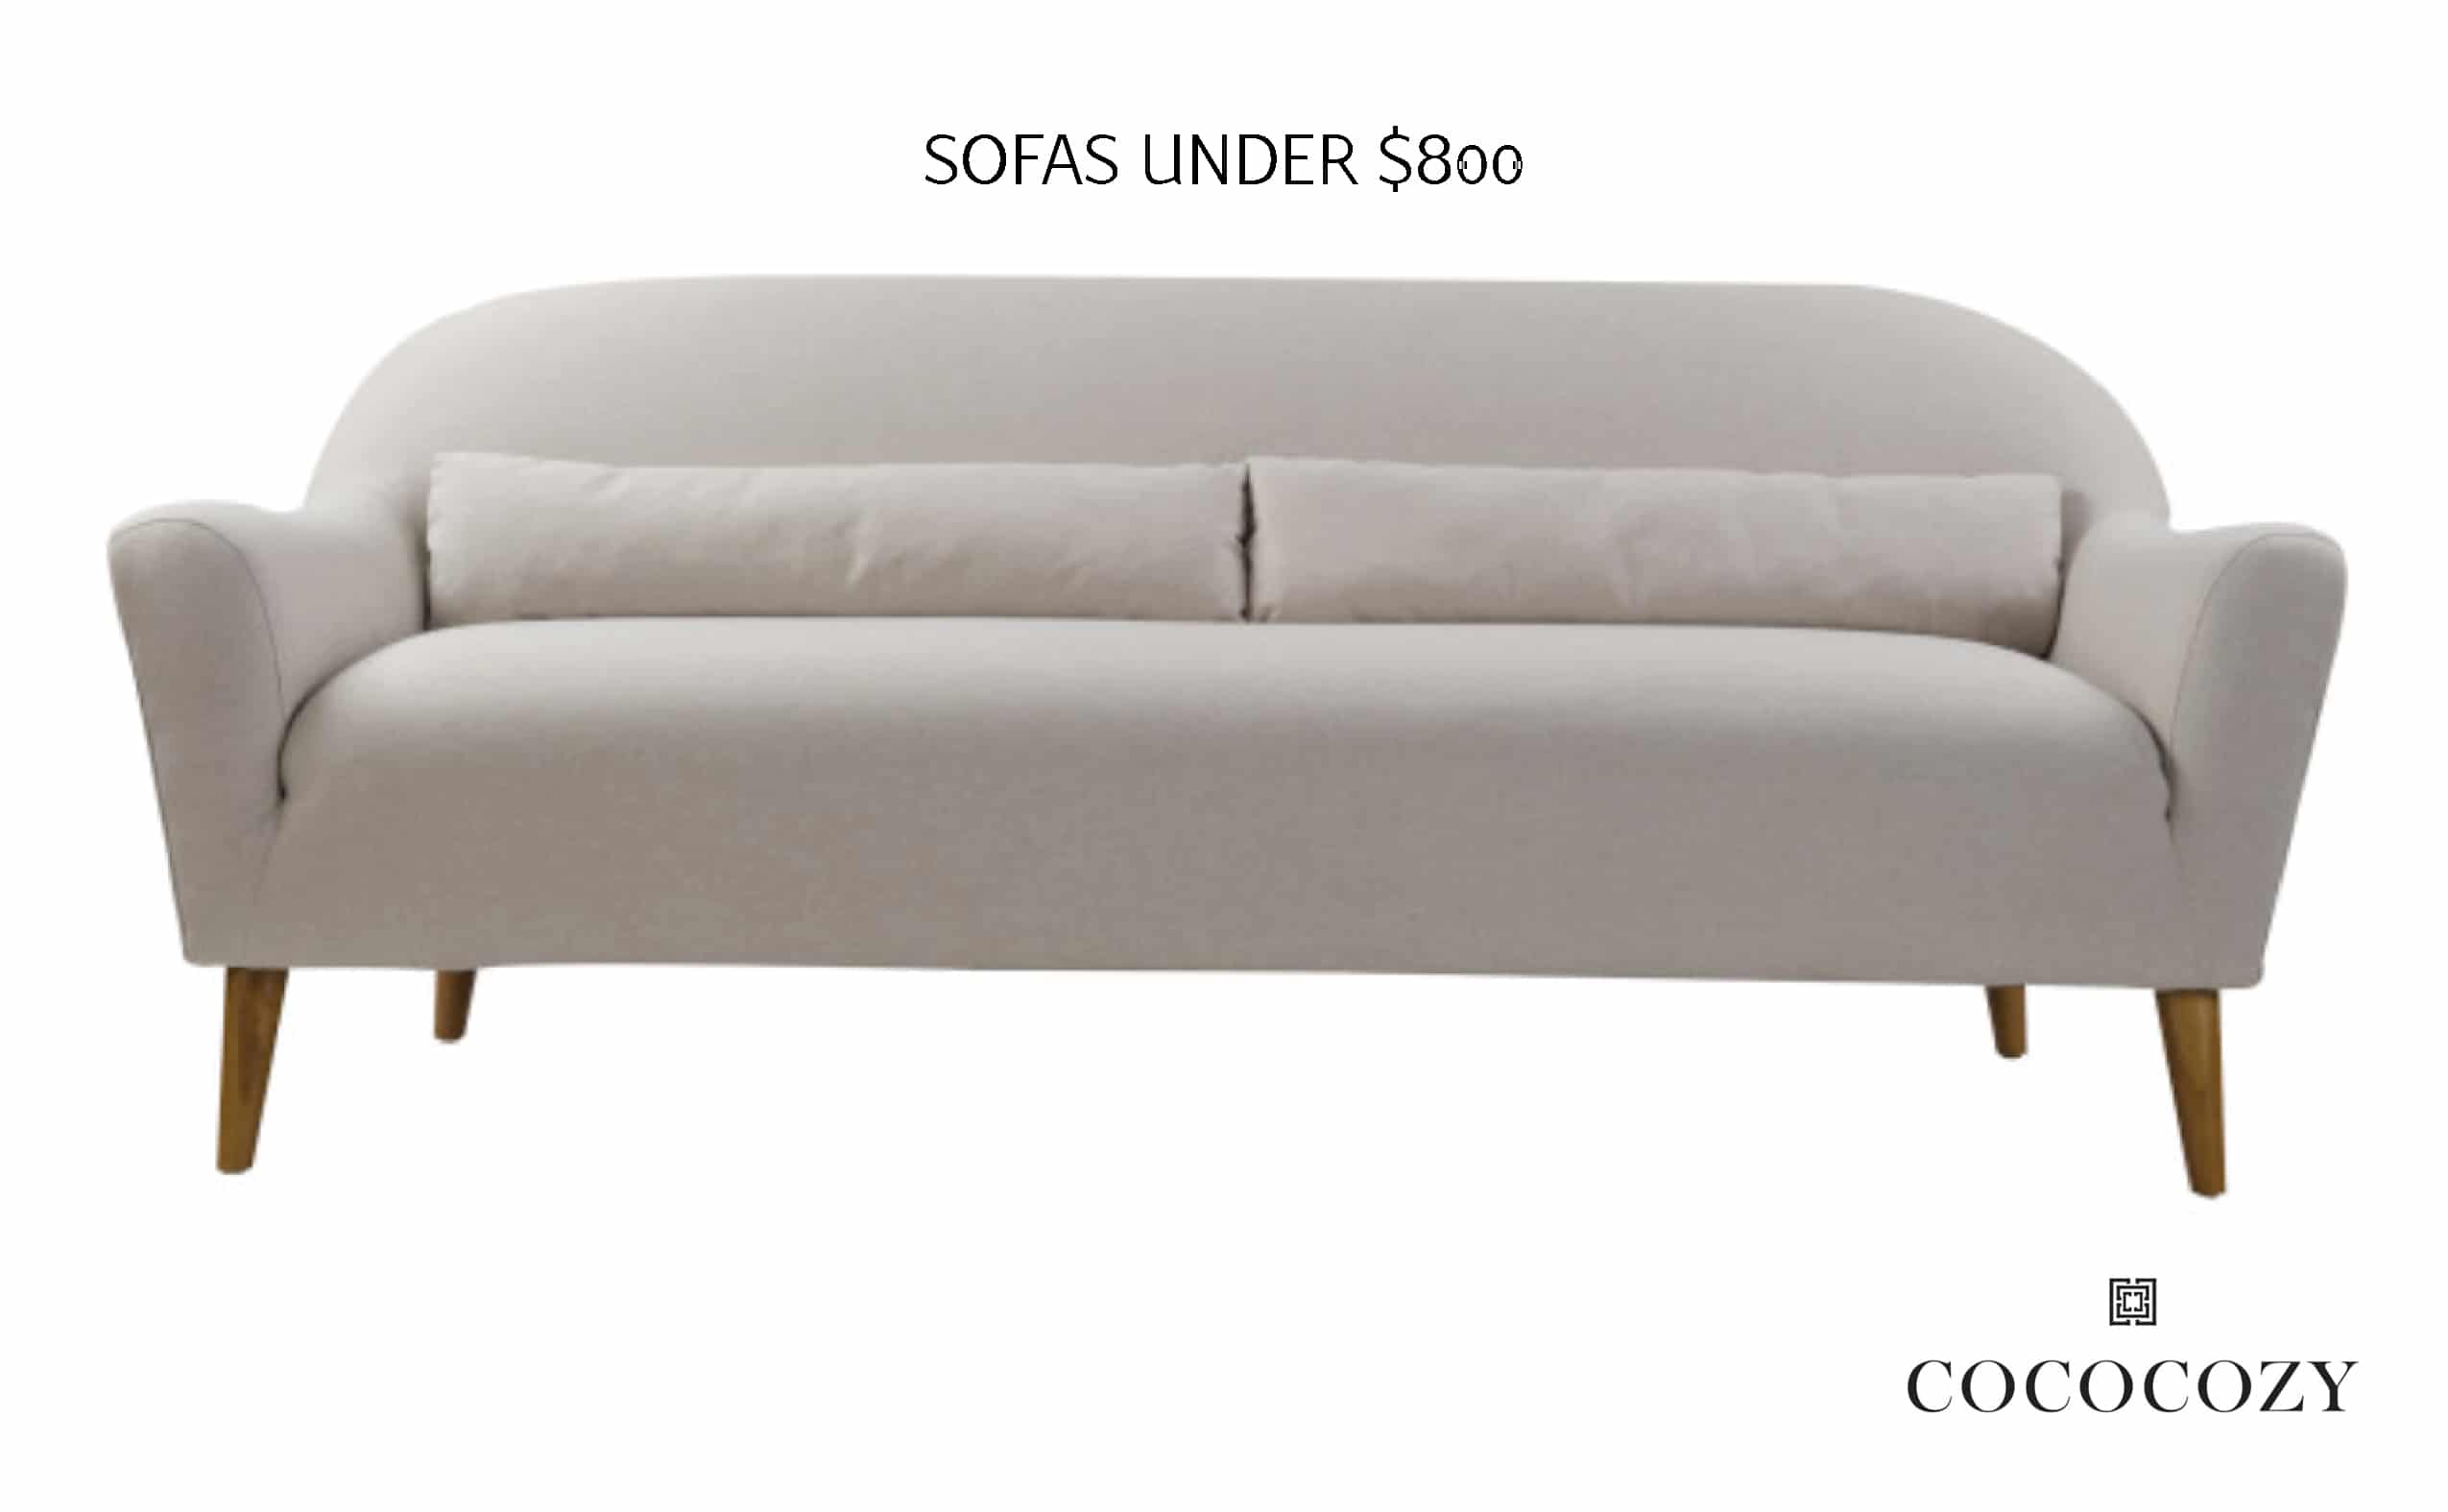 Alt tag for Sofas_under_$800_White_Modern_pillows